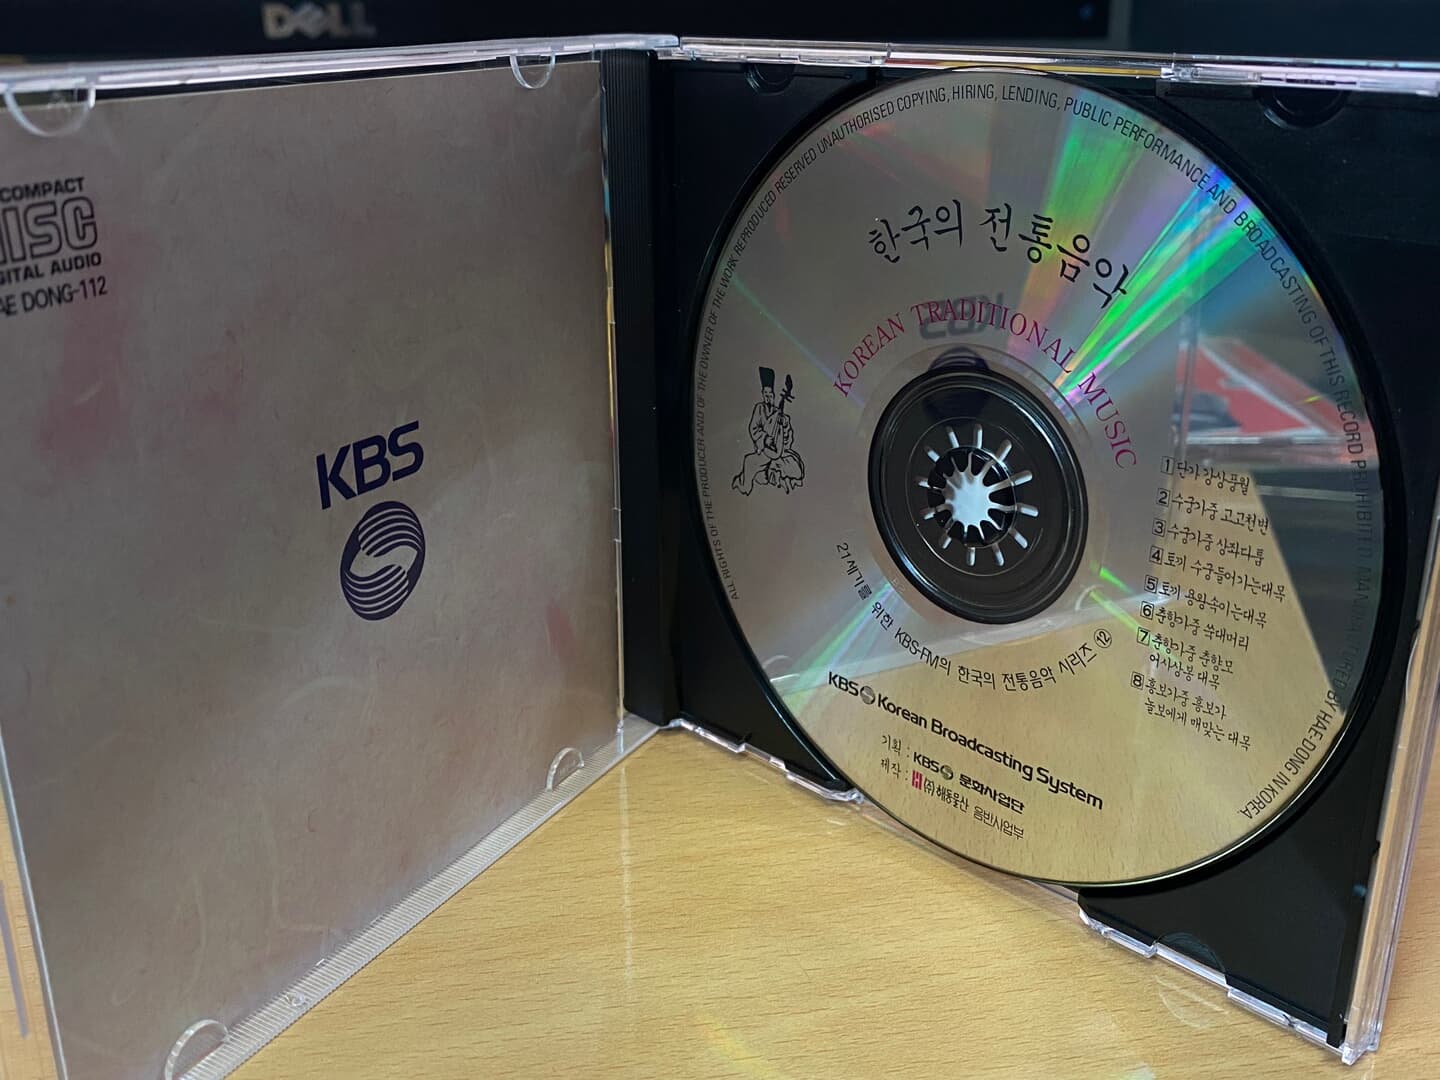 21세기를 위한 KBS-FM 전통음악 시리즈 12 - 한국의 전통 음악 (판소리)